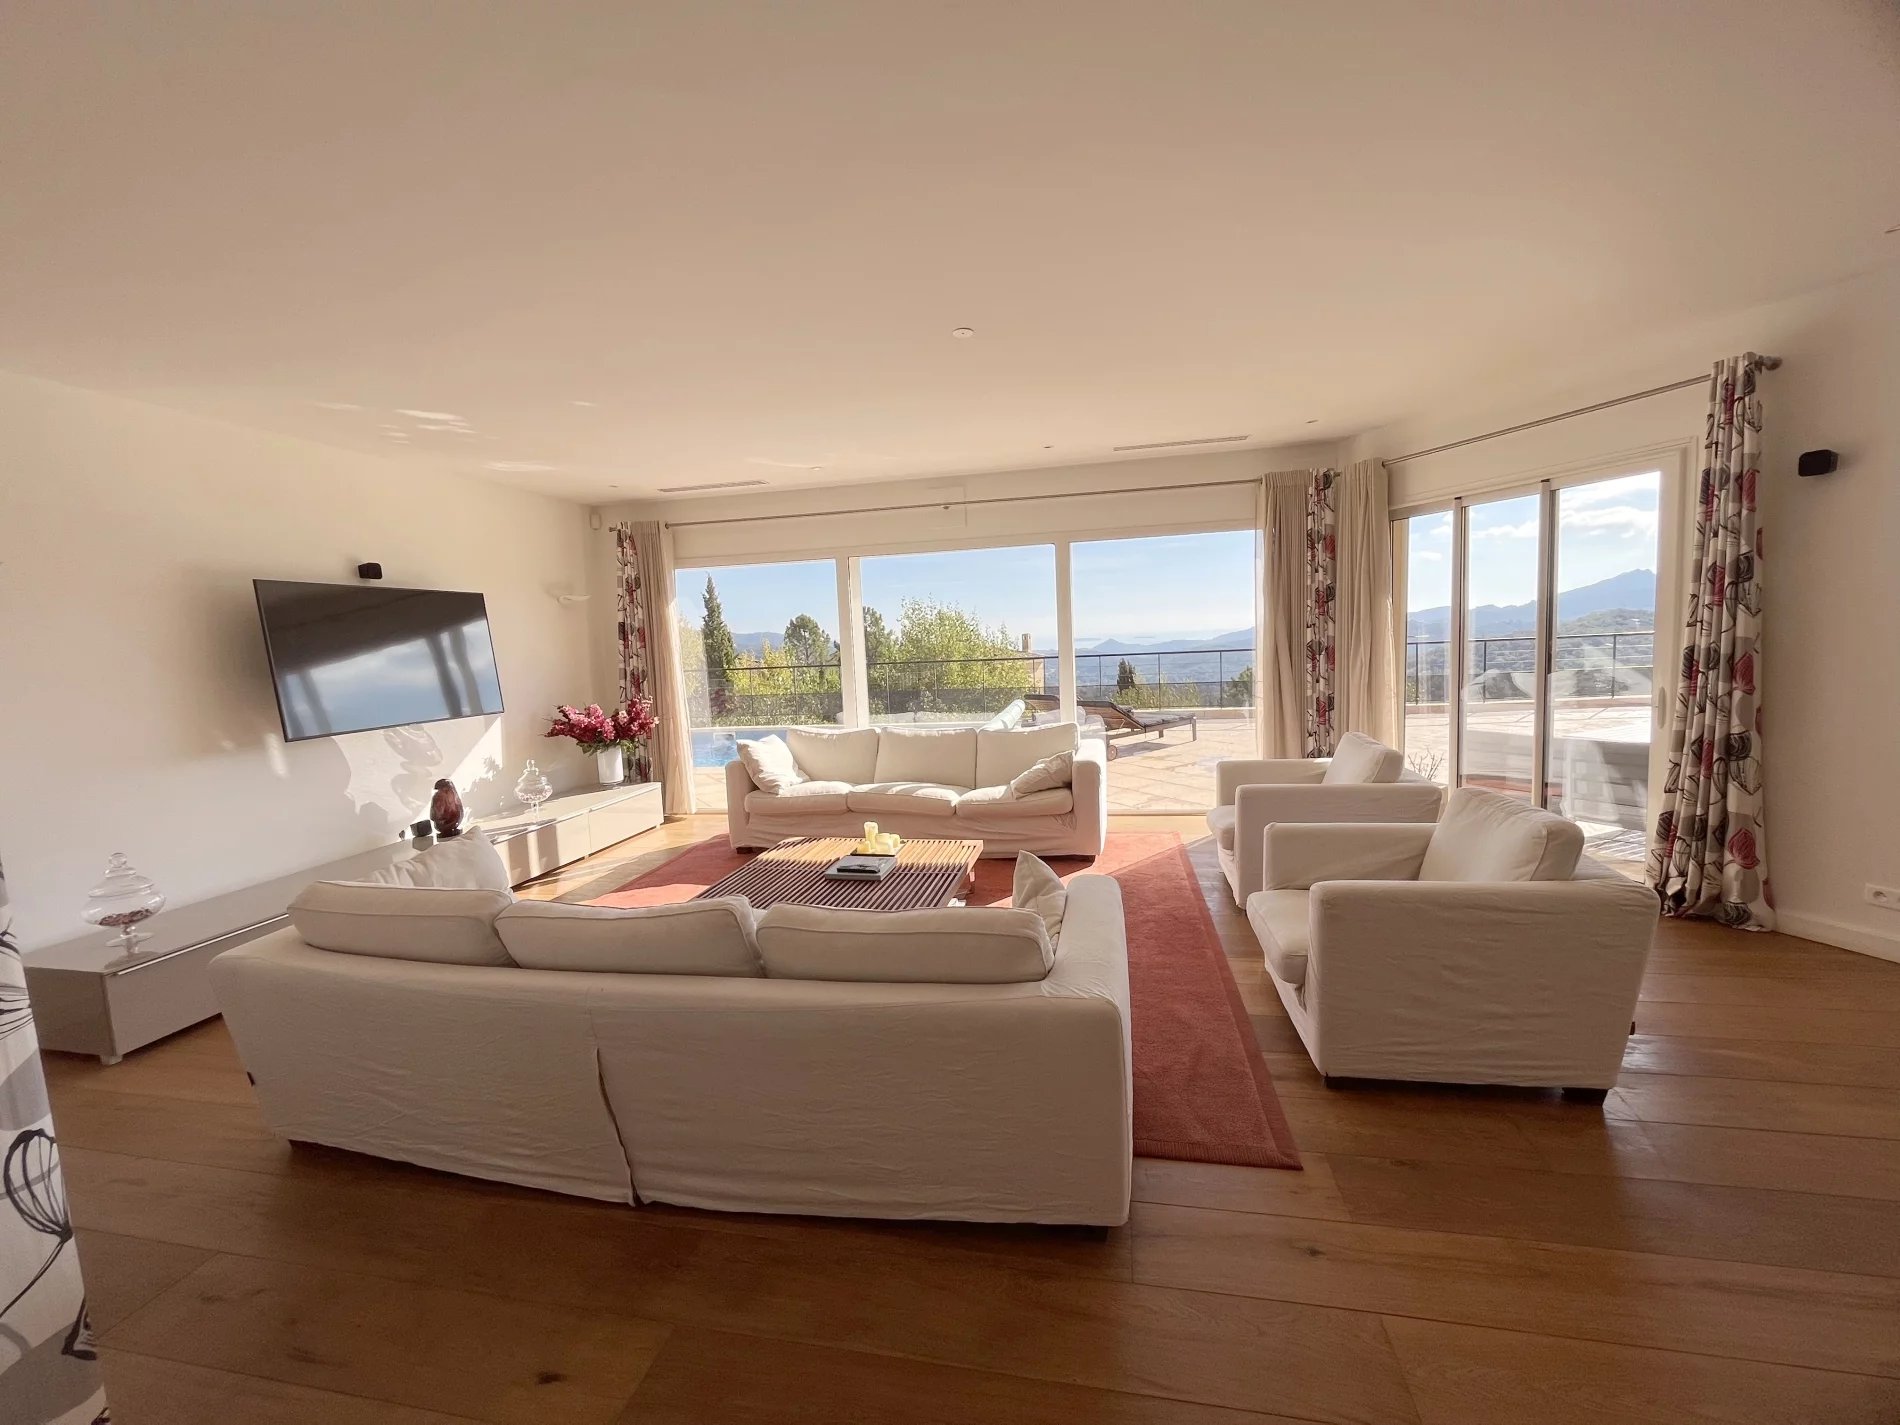 Grote villa in beveiligd domein met panoramisch uitzicht op zee, Les Adrets